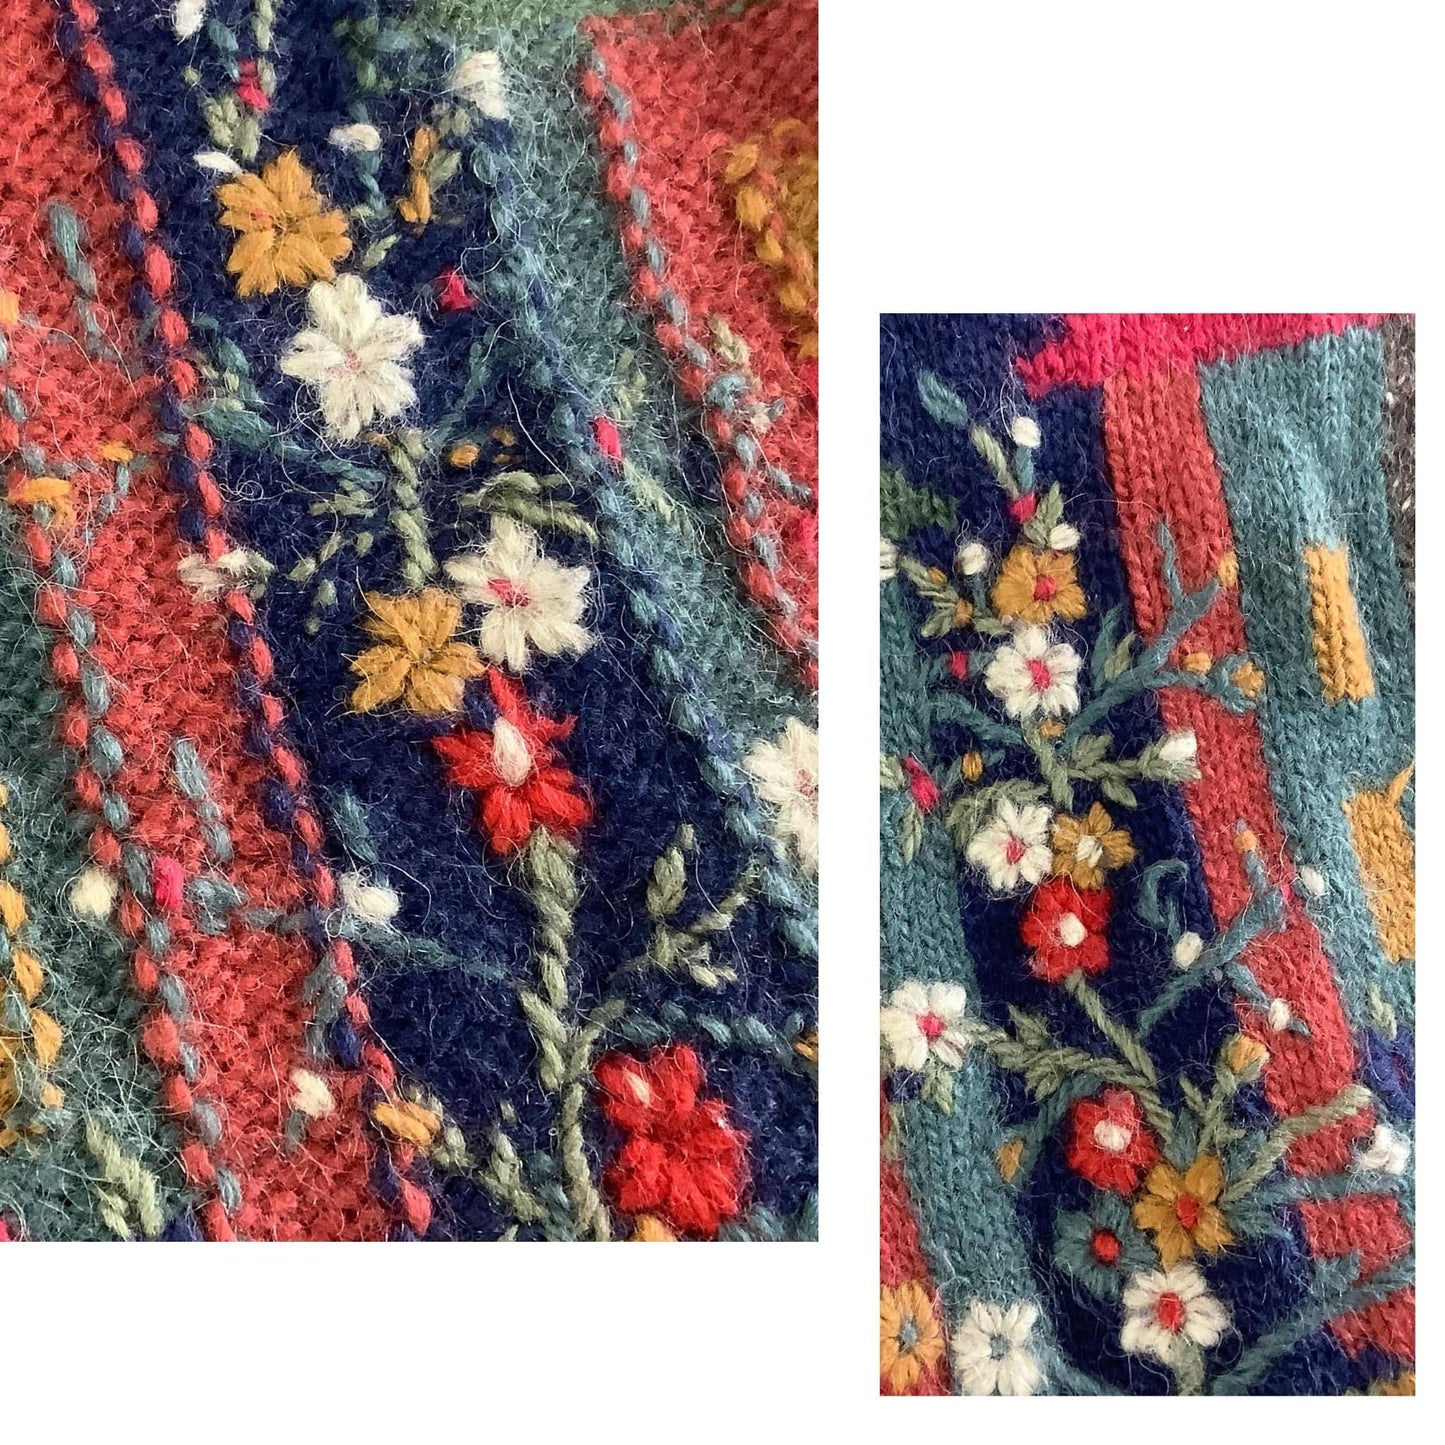 Sirogojno Wool Sweater Medium / Multi / Vintage 1980s